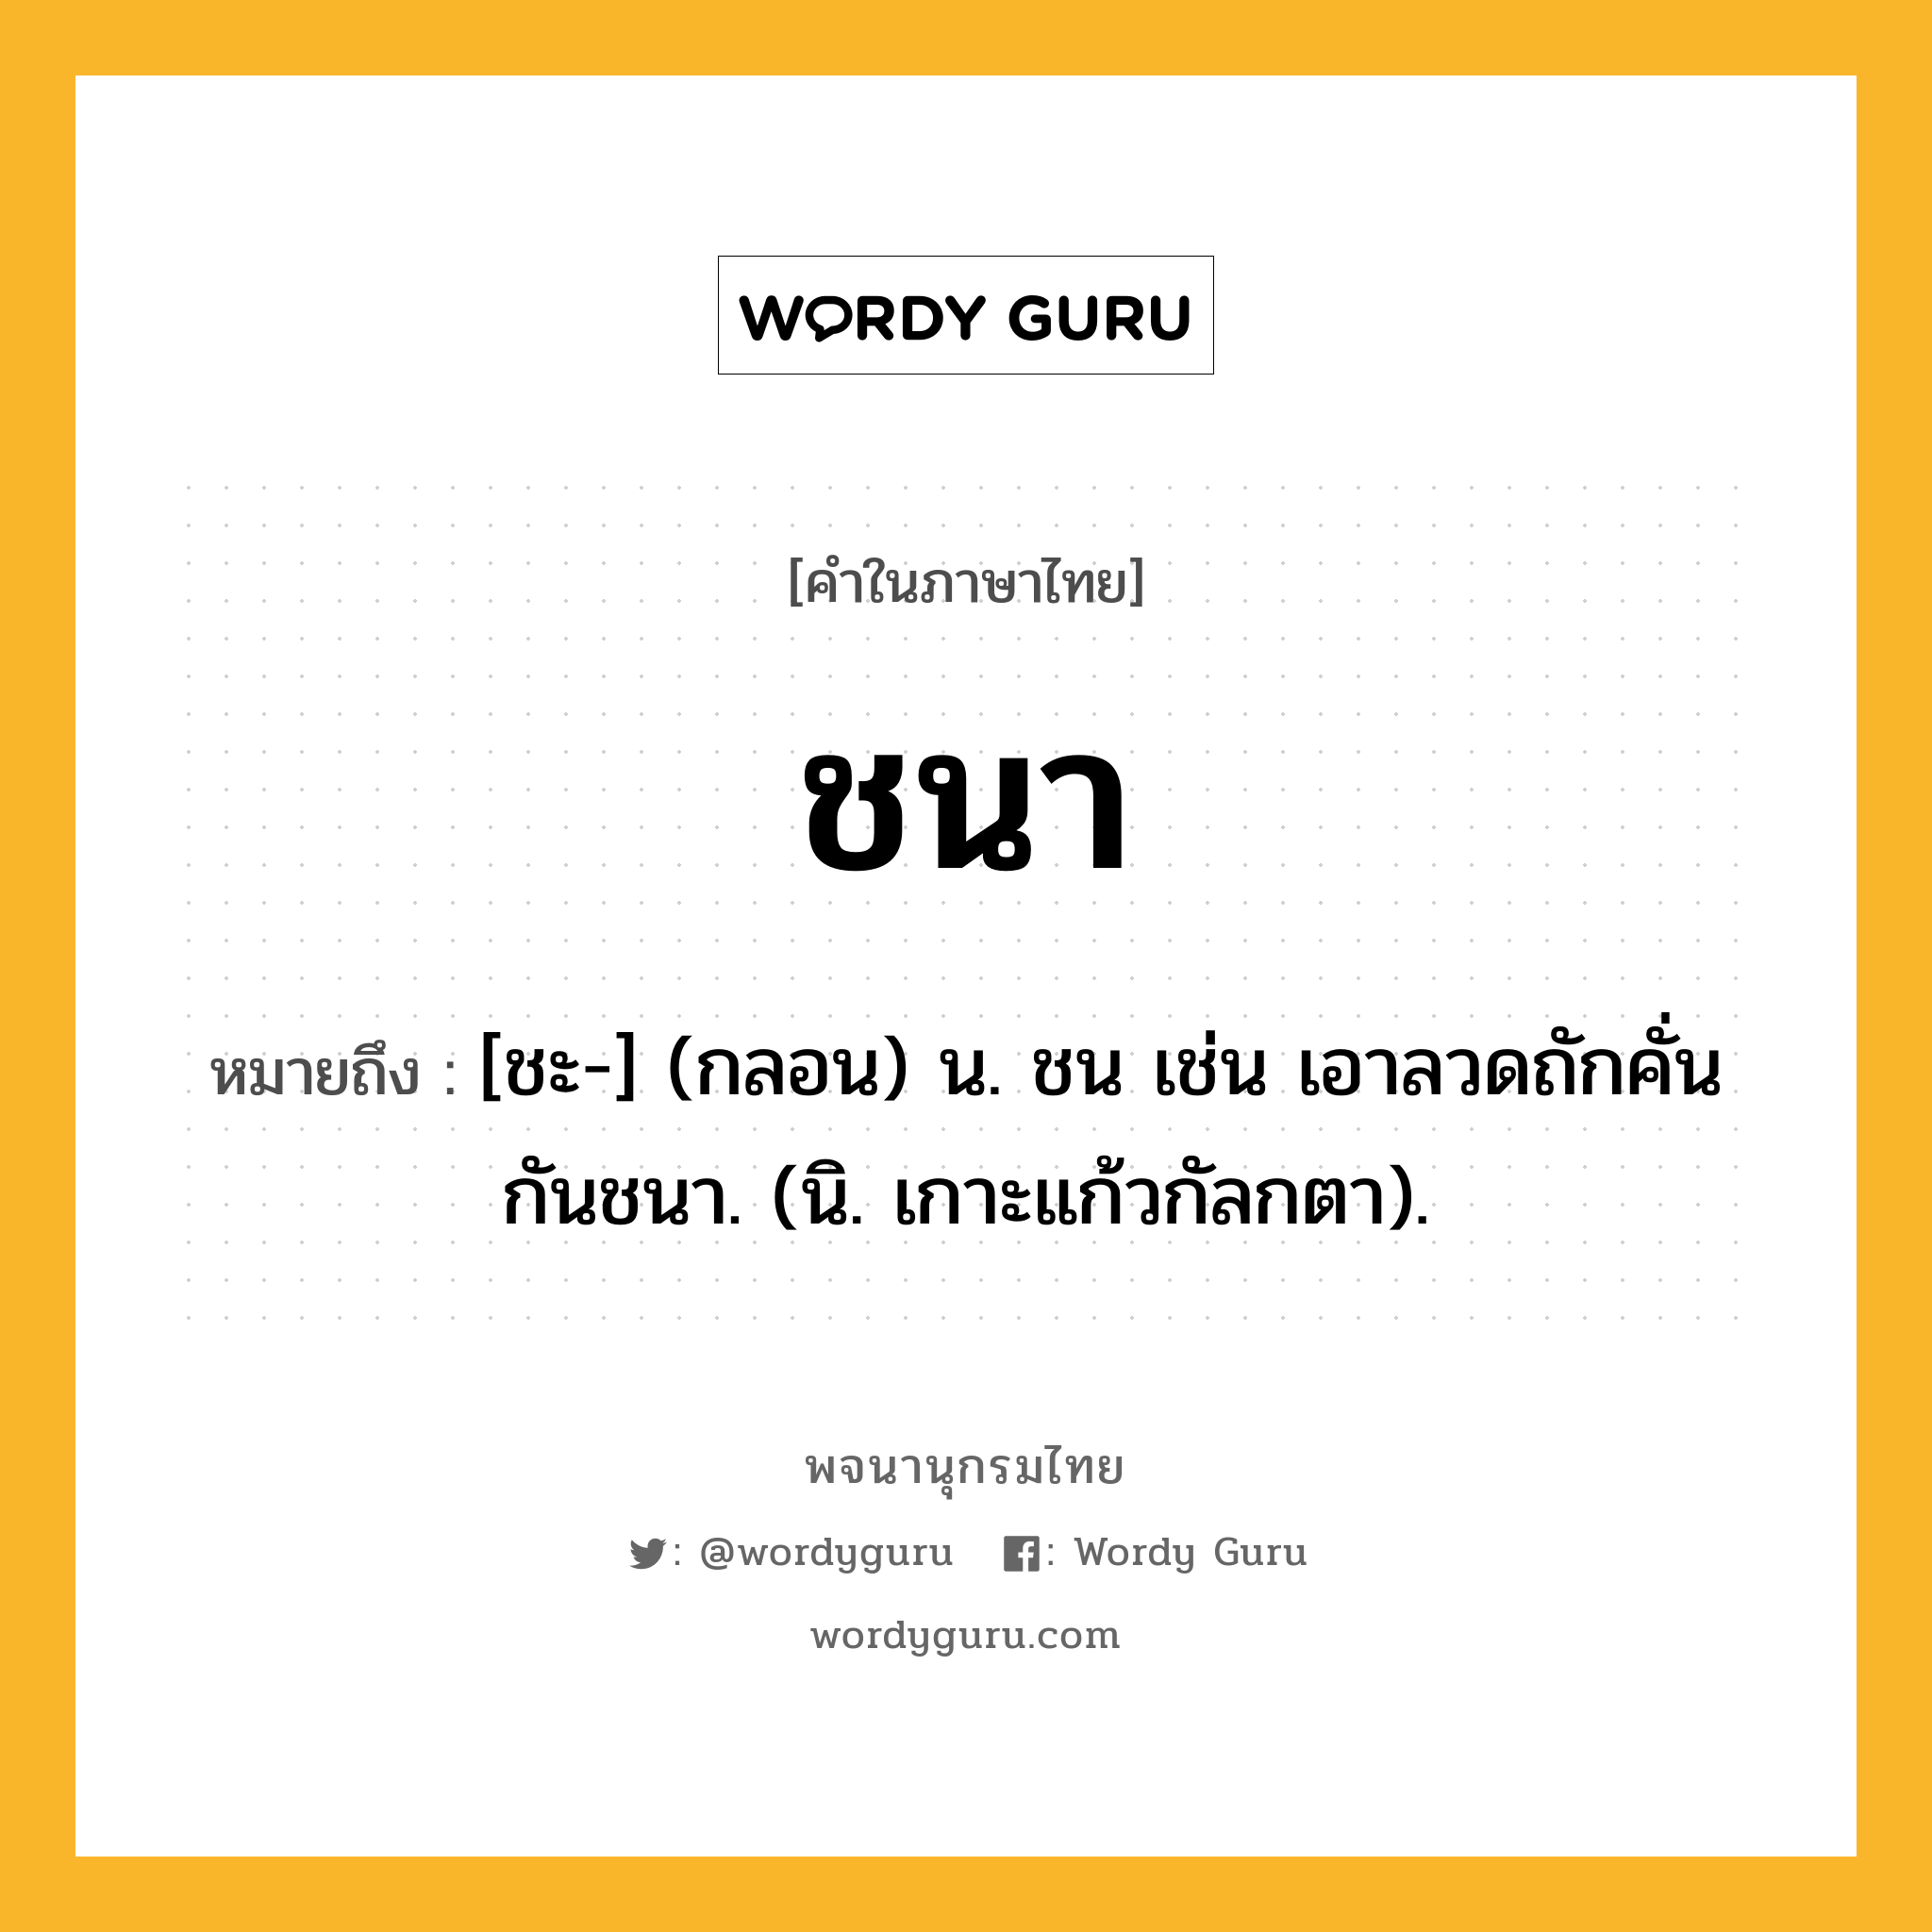 ชนา ความหมาย หมายถึงอะไร?, คำในภาษาไทย ชนา หมายถึง [ชะ-] (กลอน) น. ชน เช่น เอาลวดถักคั่นกันชนา. (นิ. เกาะแก้วกัลกตา).